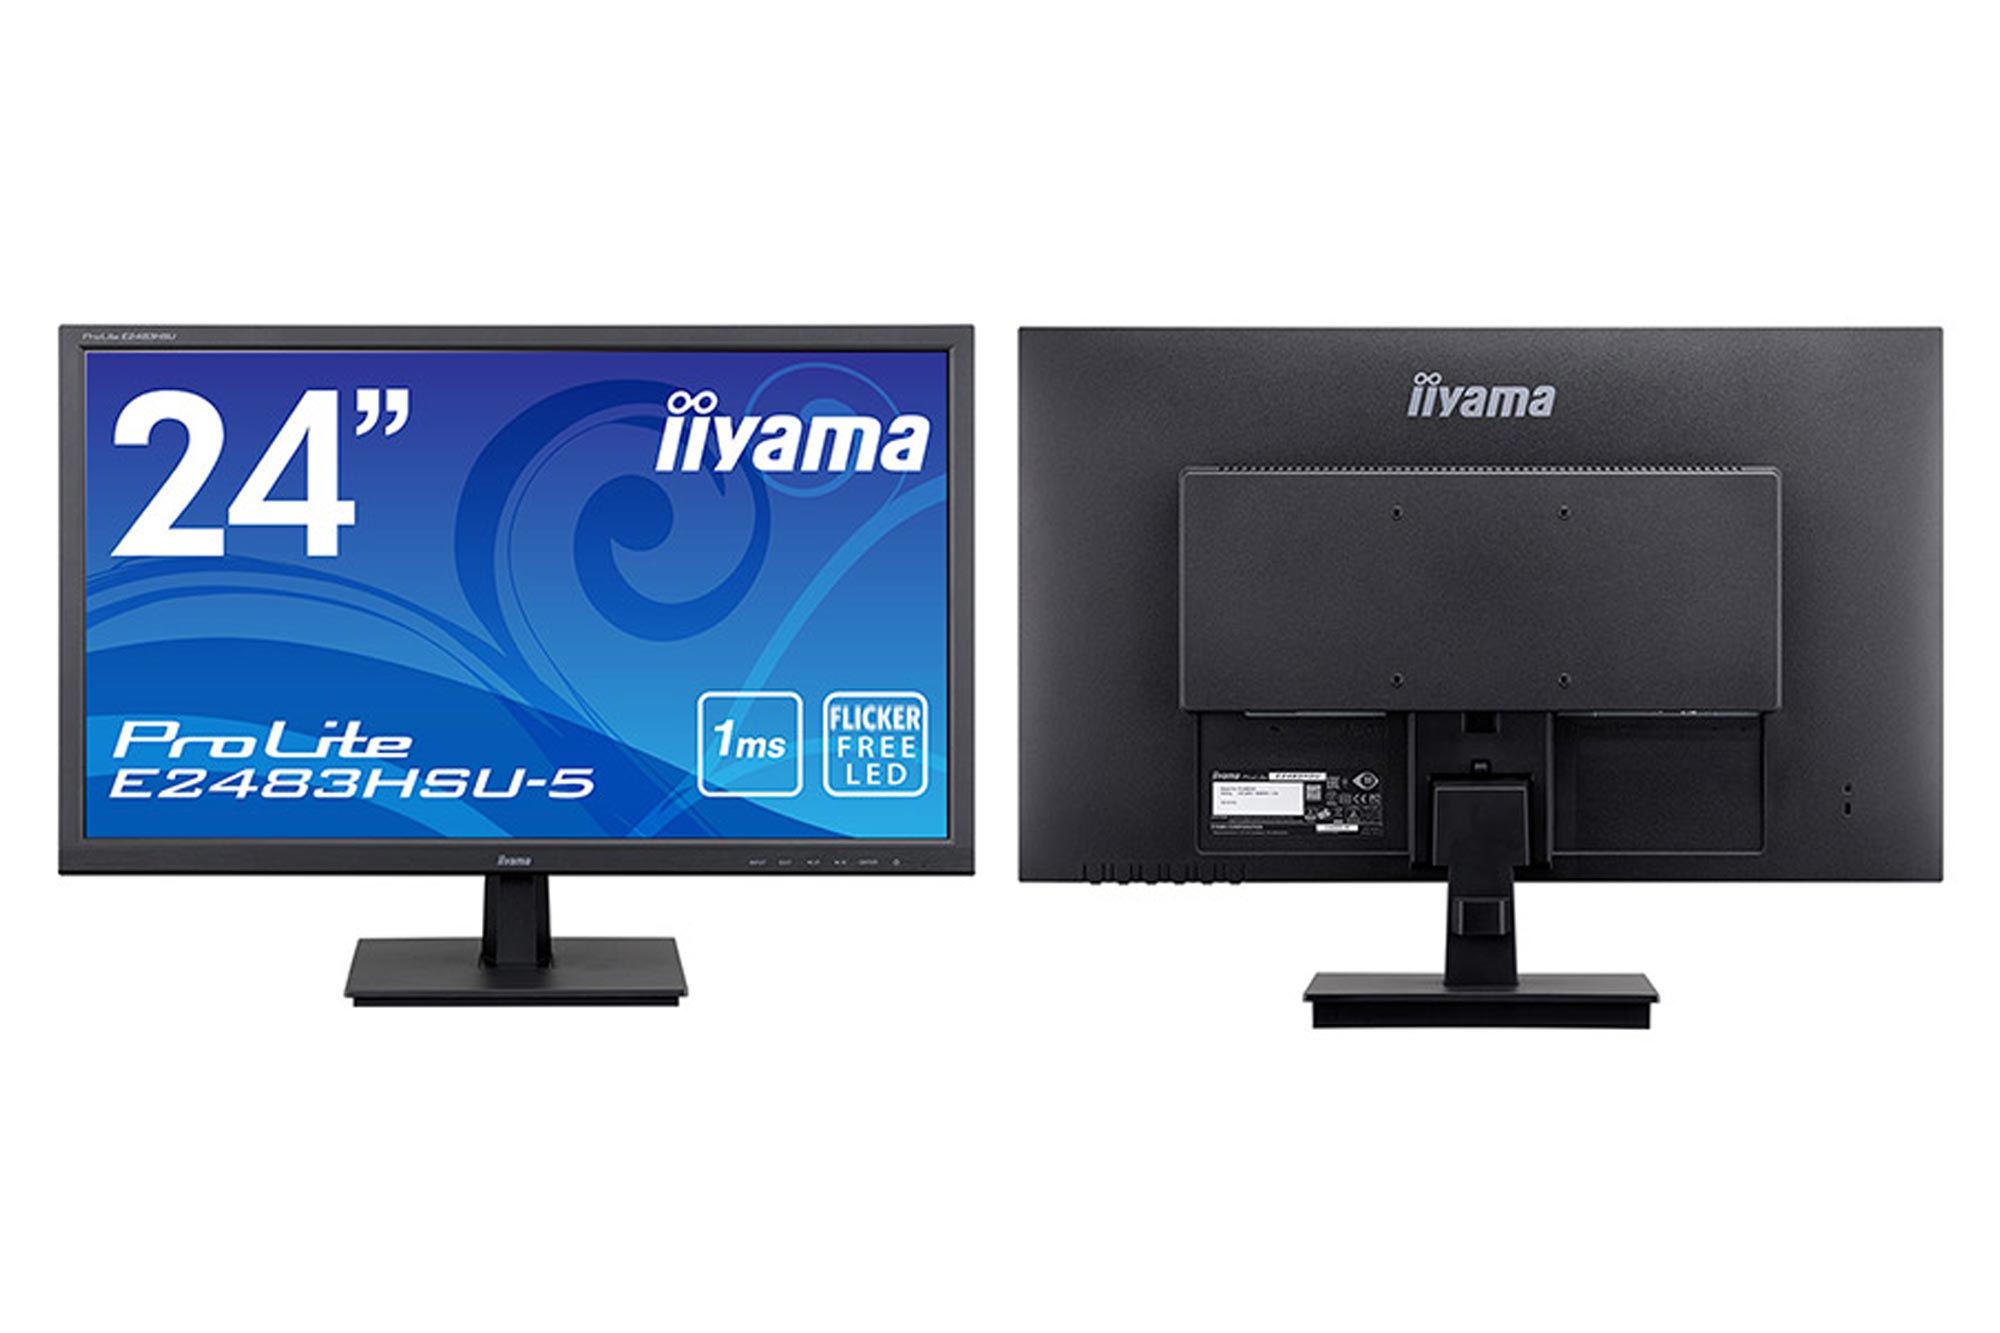 マウスコンピューター、“iiyama”ブランドの24型ワイド液晶ディスプレイ 